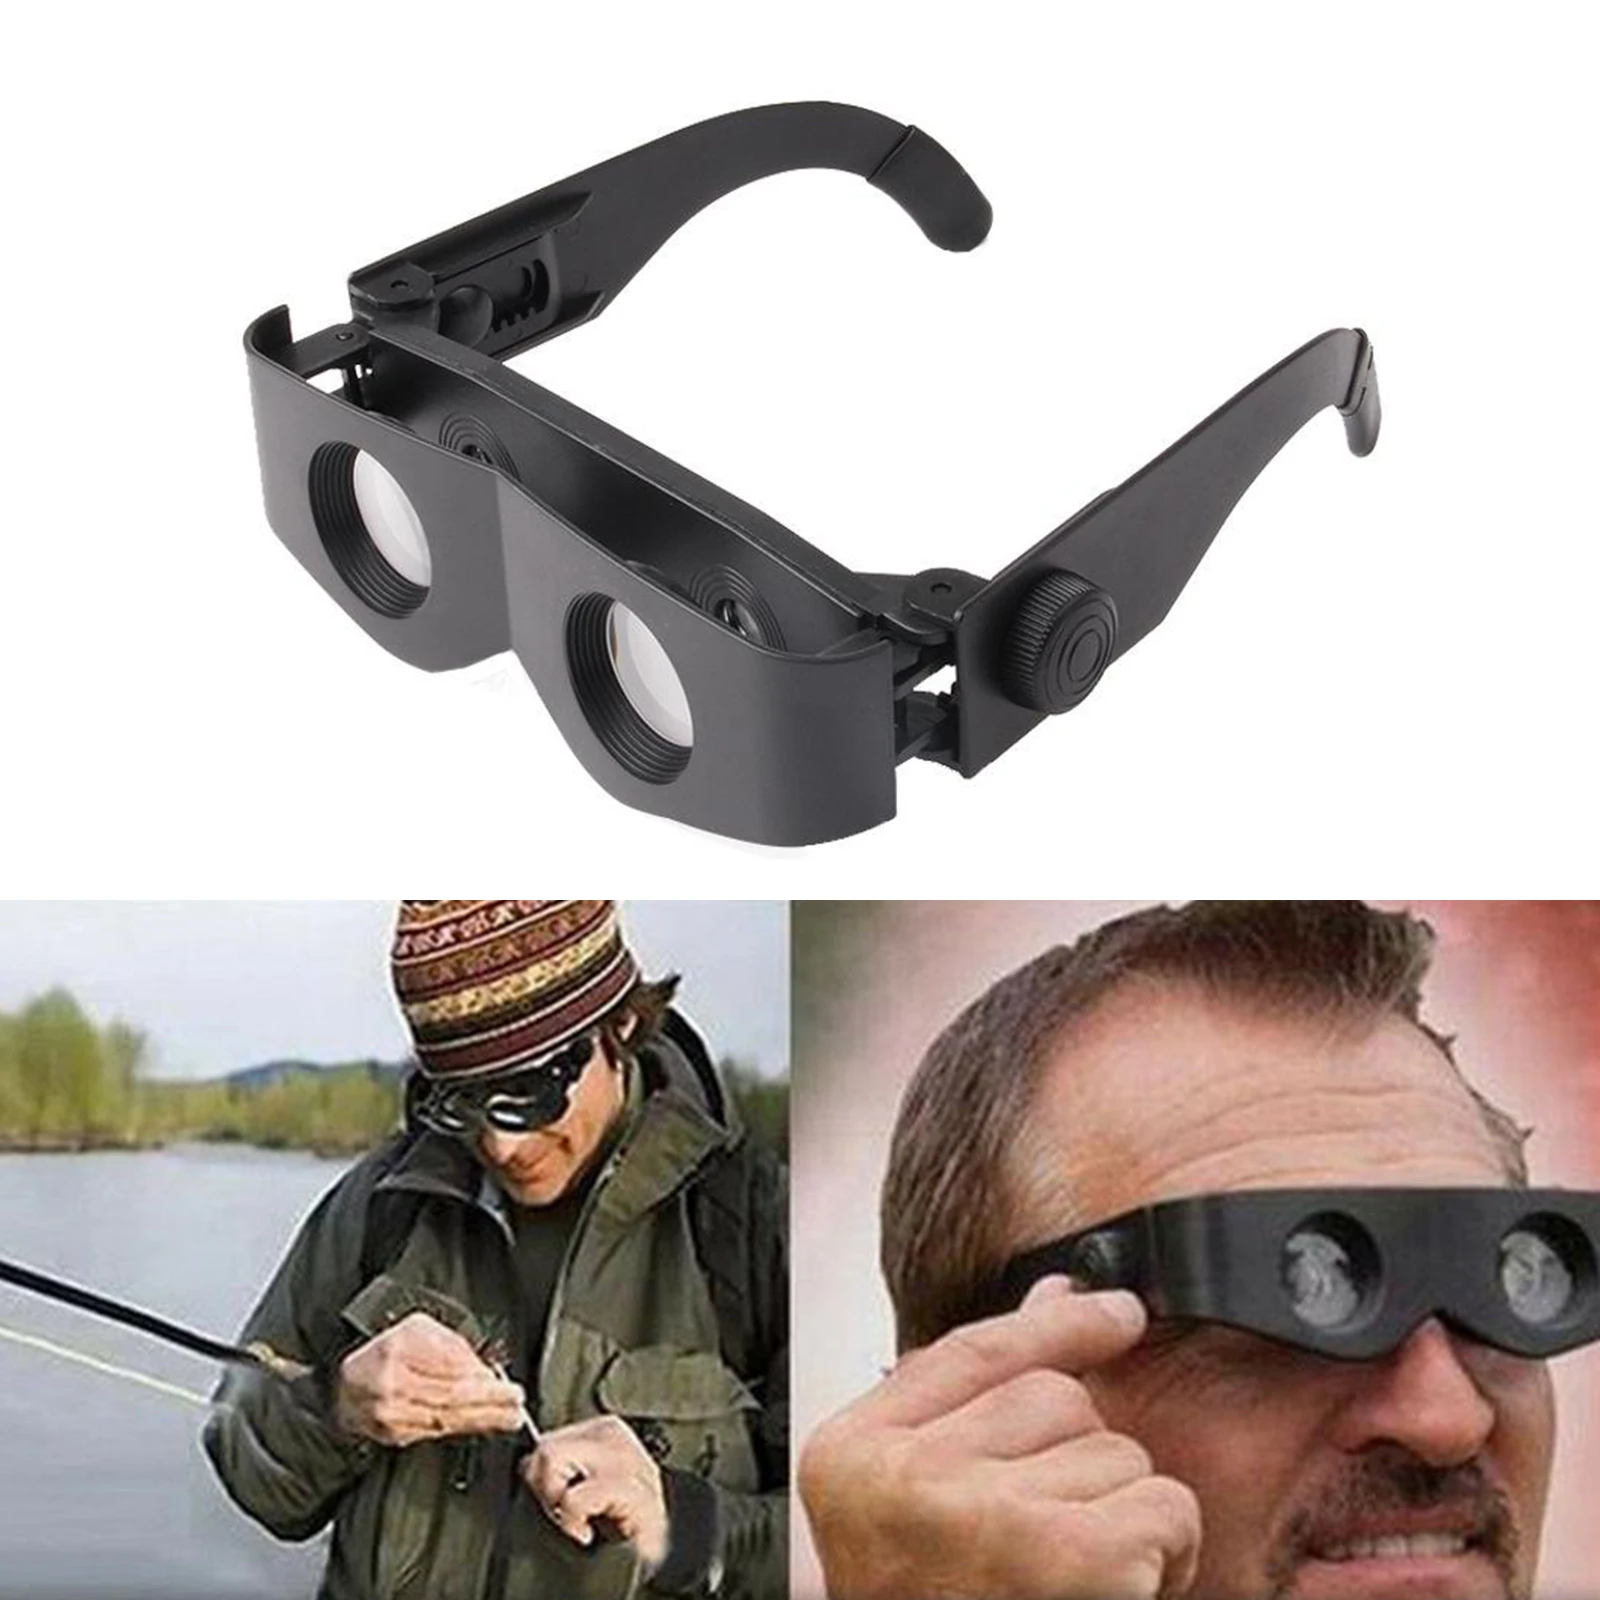 13184円 【83%OFF!】 送料無料 Professional Hands-Free Binocular Glasses for Fishing Bird Watching Sport